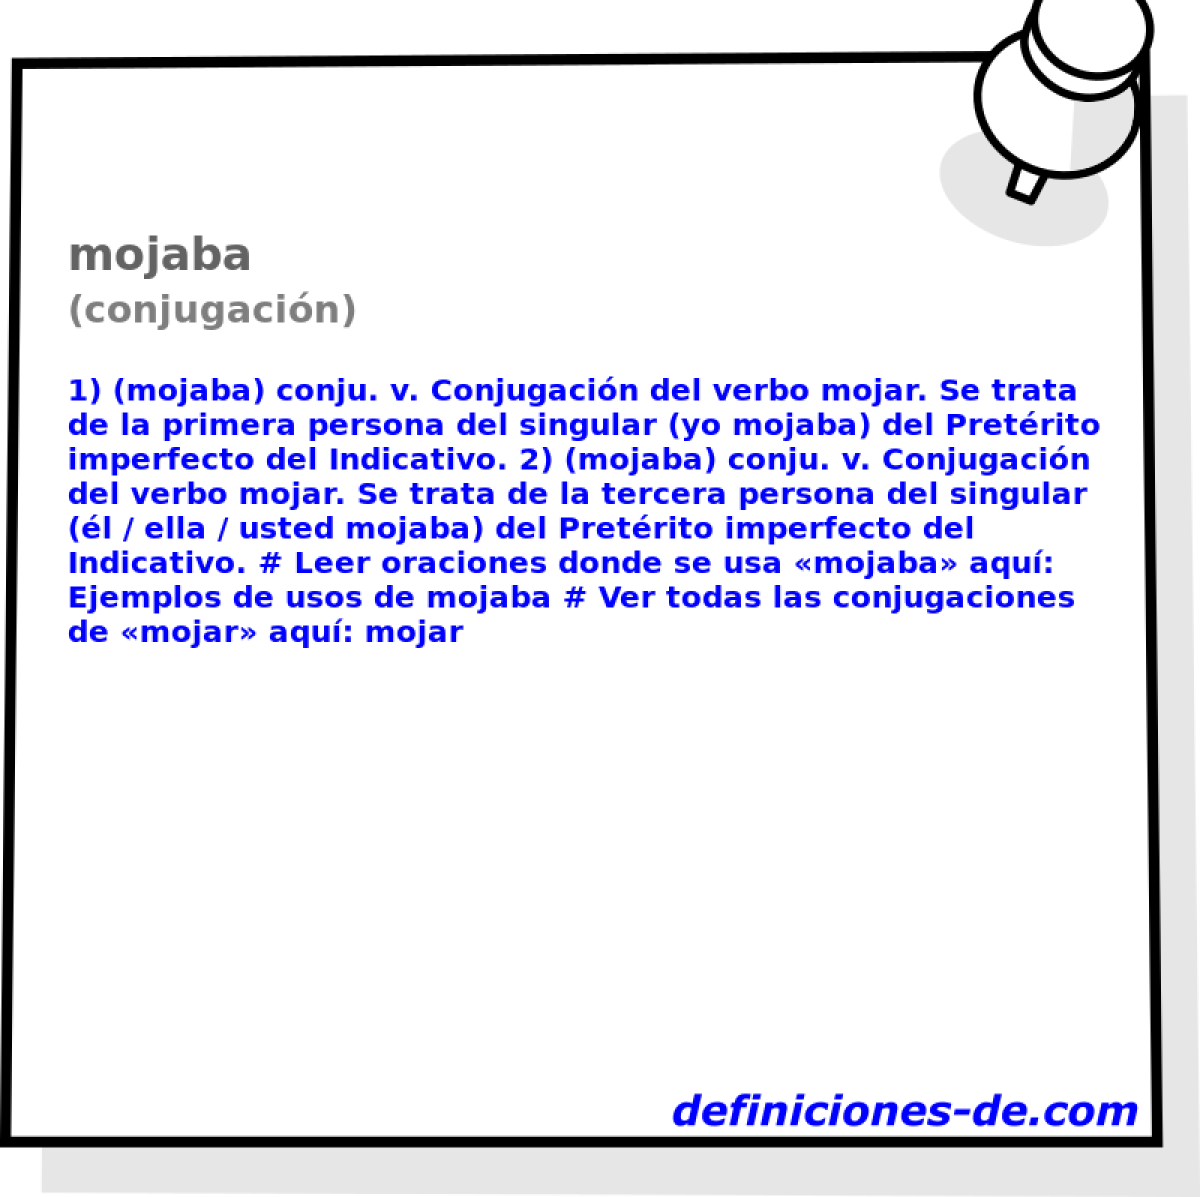 mojaba (conjugacin)